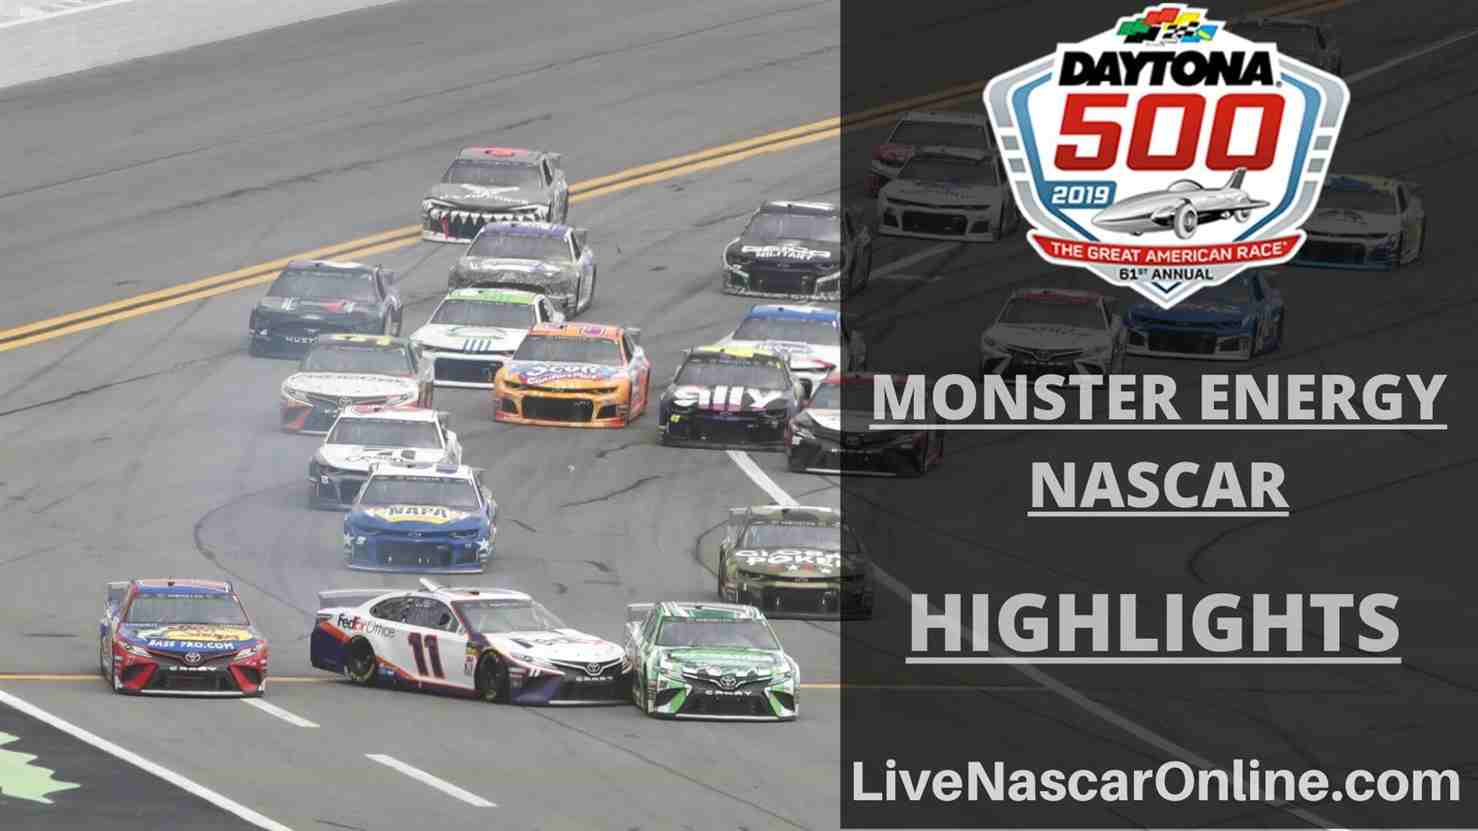 NASCAR Daytona 500 Highlights 2019 Online